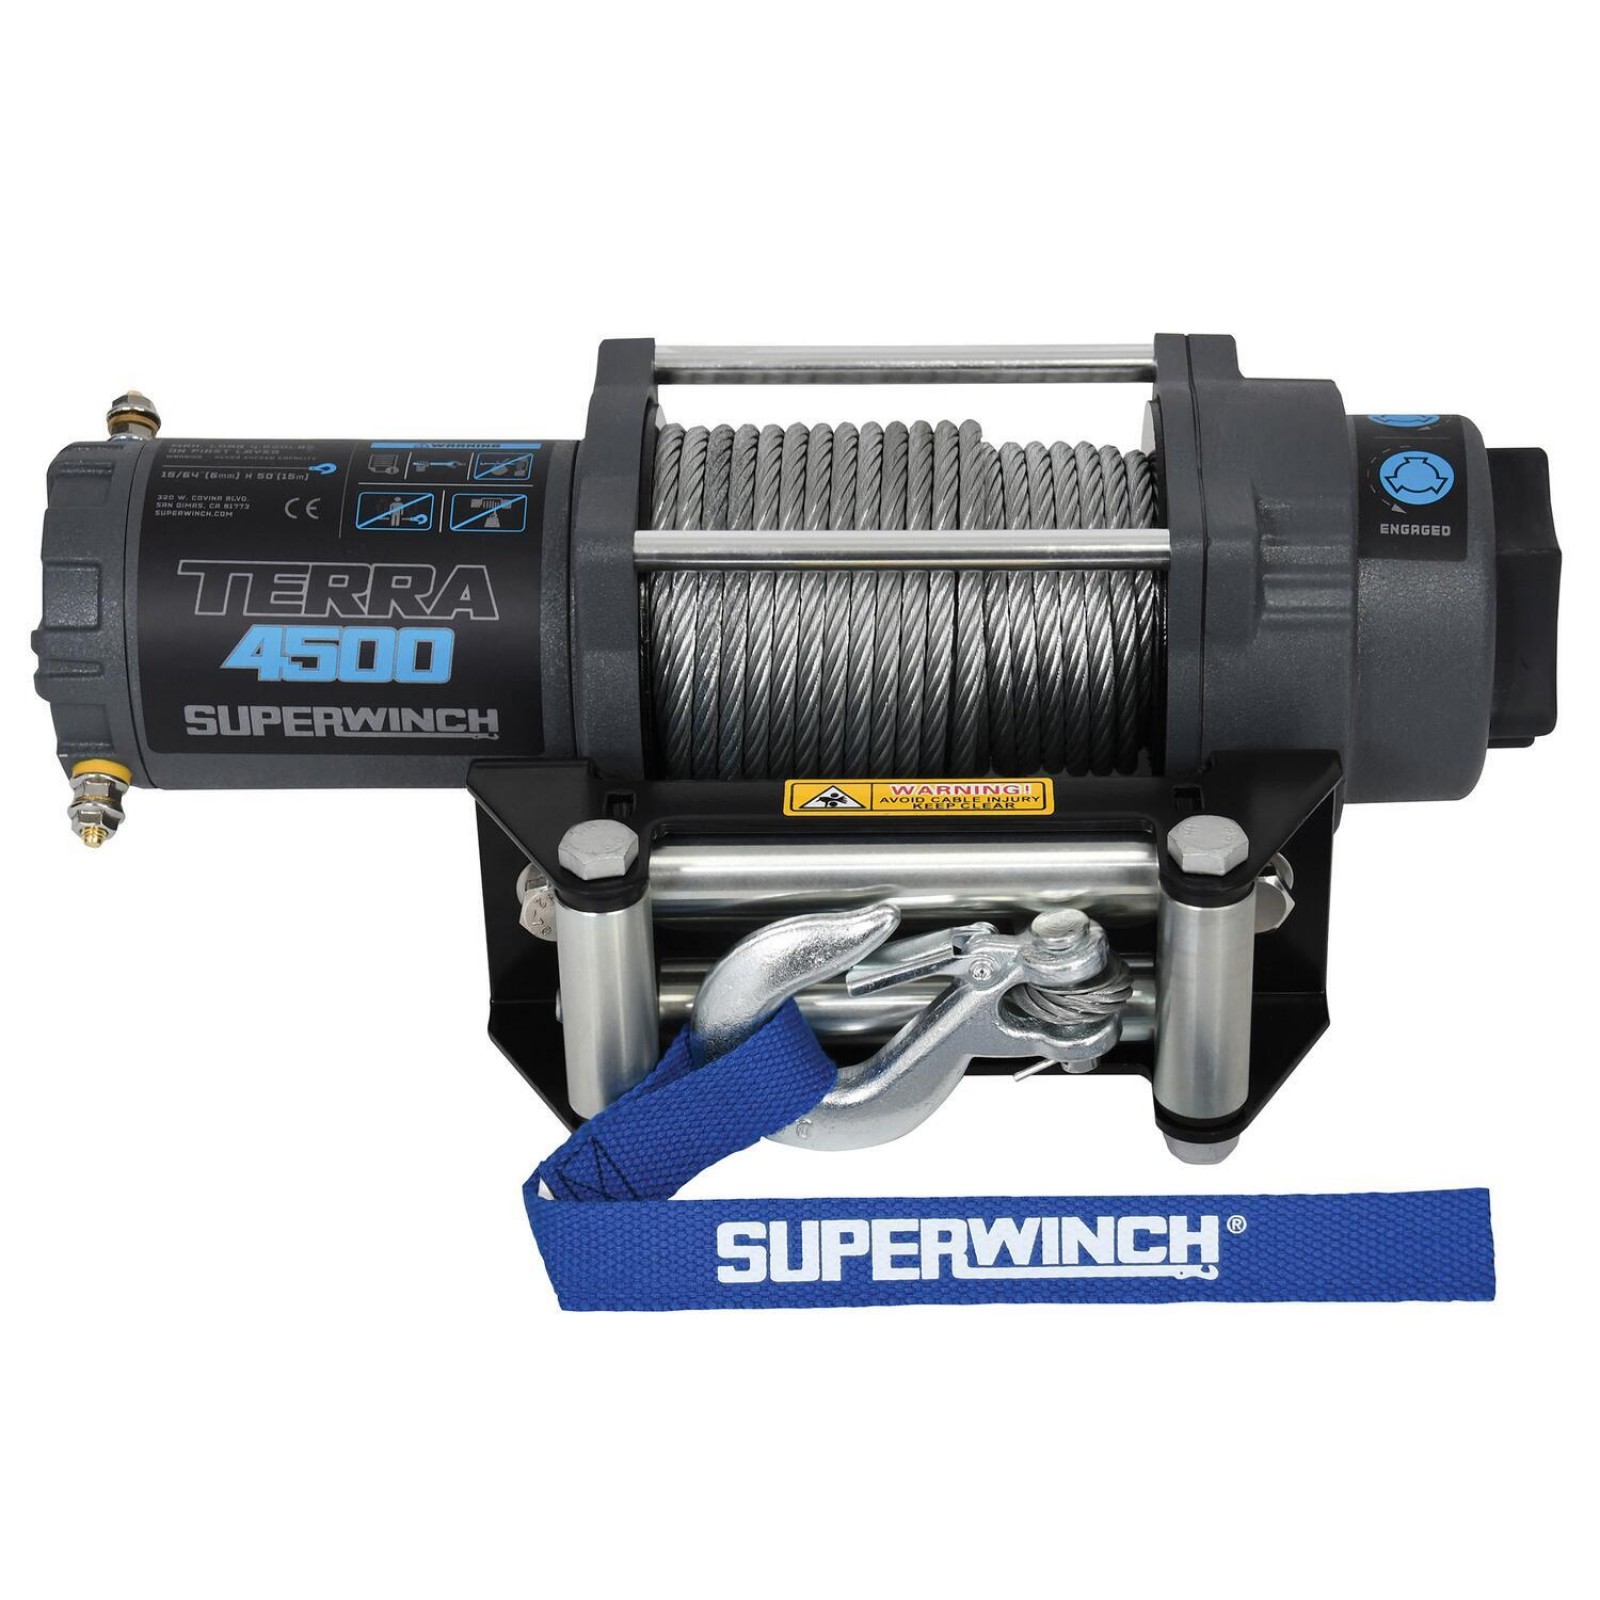 Superwinch - Terra 4500 Winch - 1145260 (4500 pound)